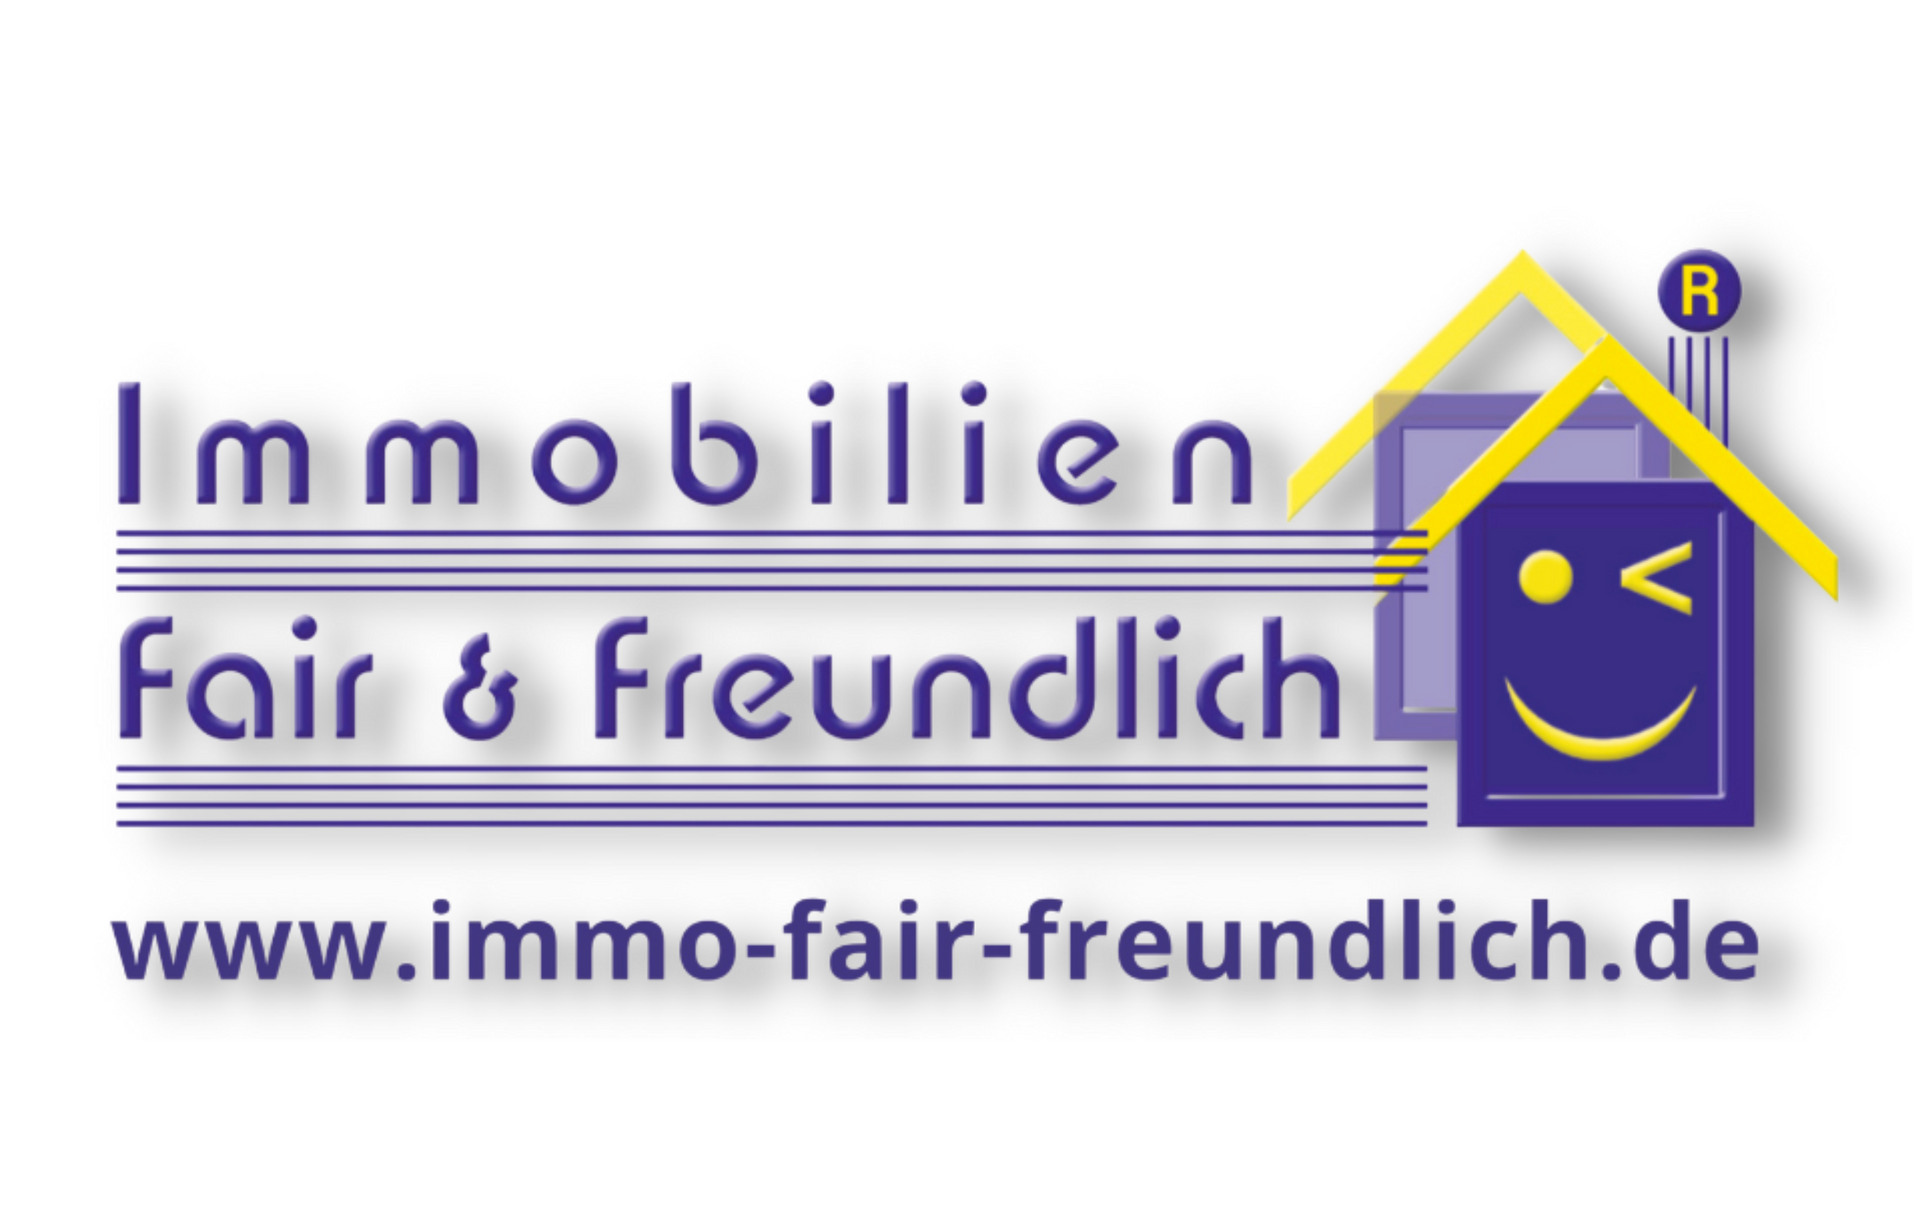 IMMOBILIEN FAIR & FREUNDLICH